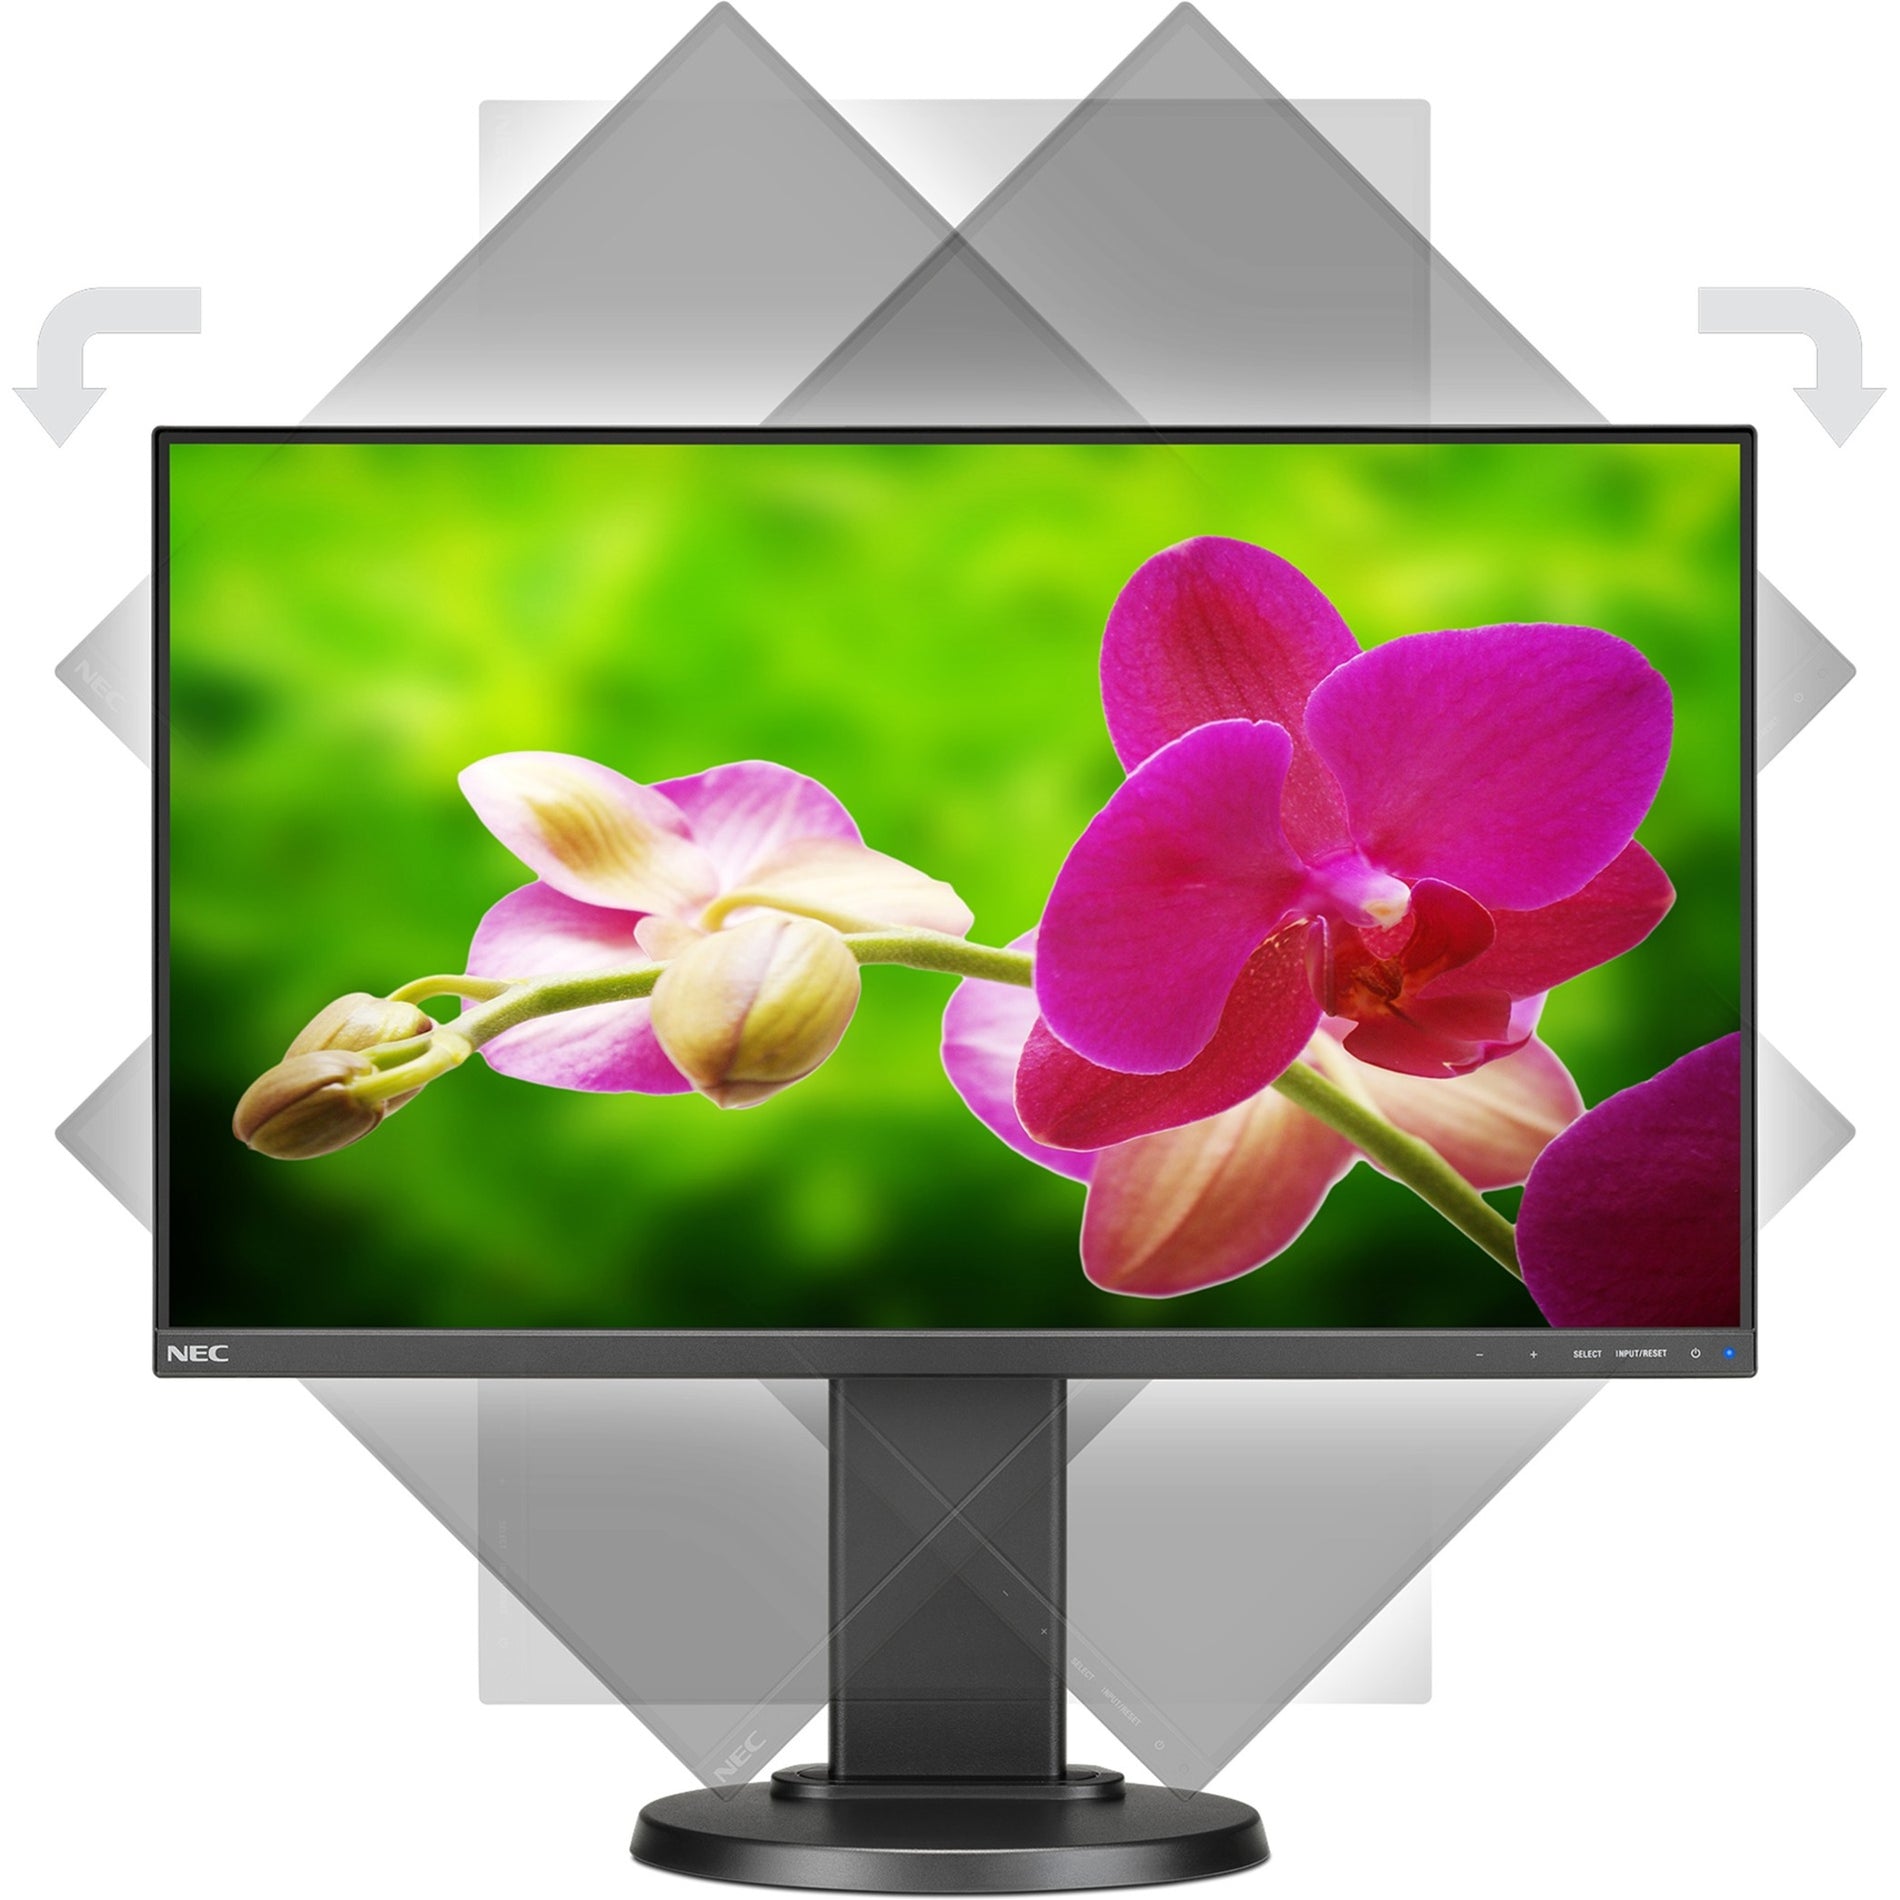 NEC Display 24 Narrow Bezel Desktop Monitor [Discontinued]